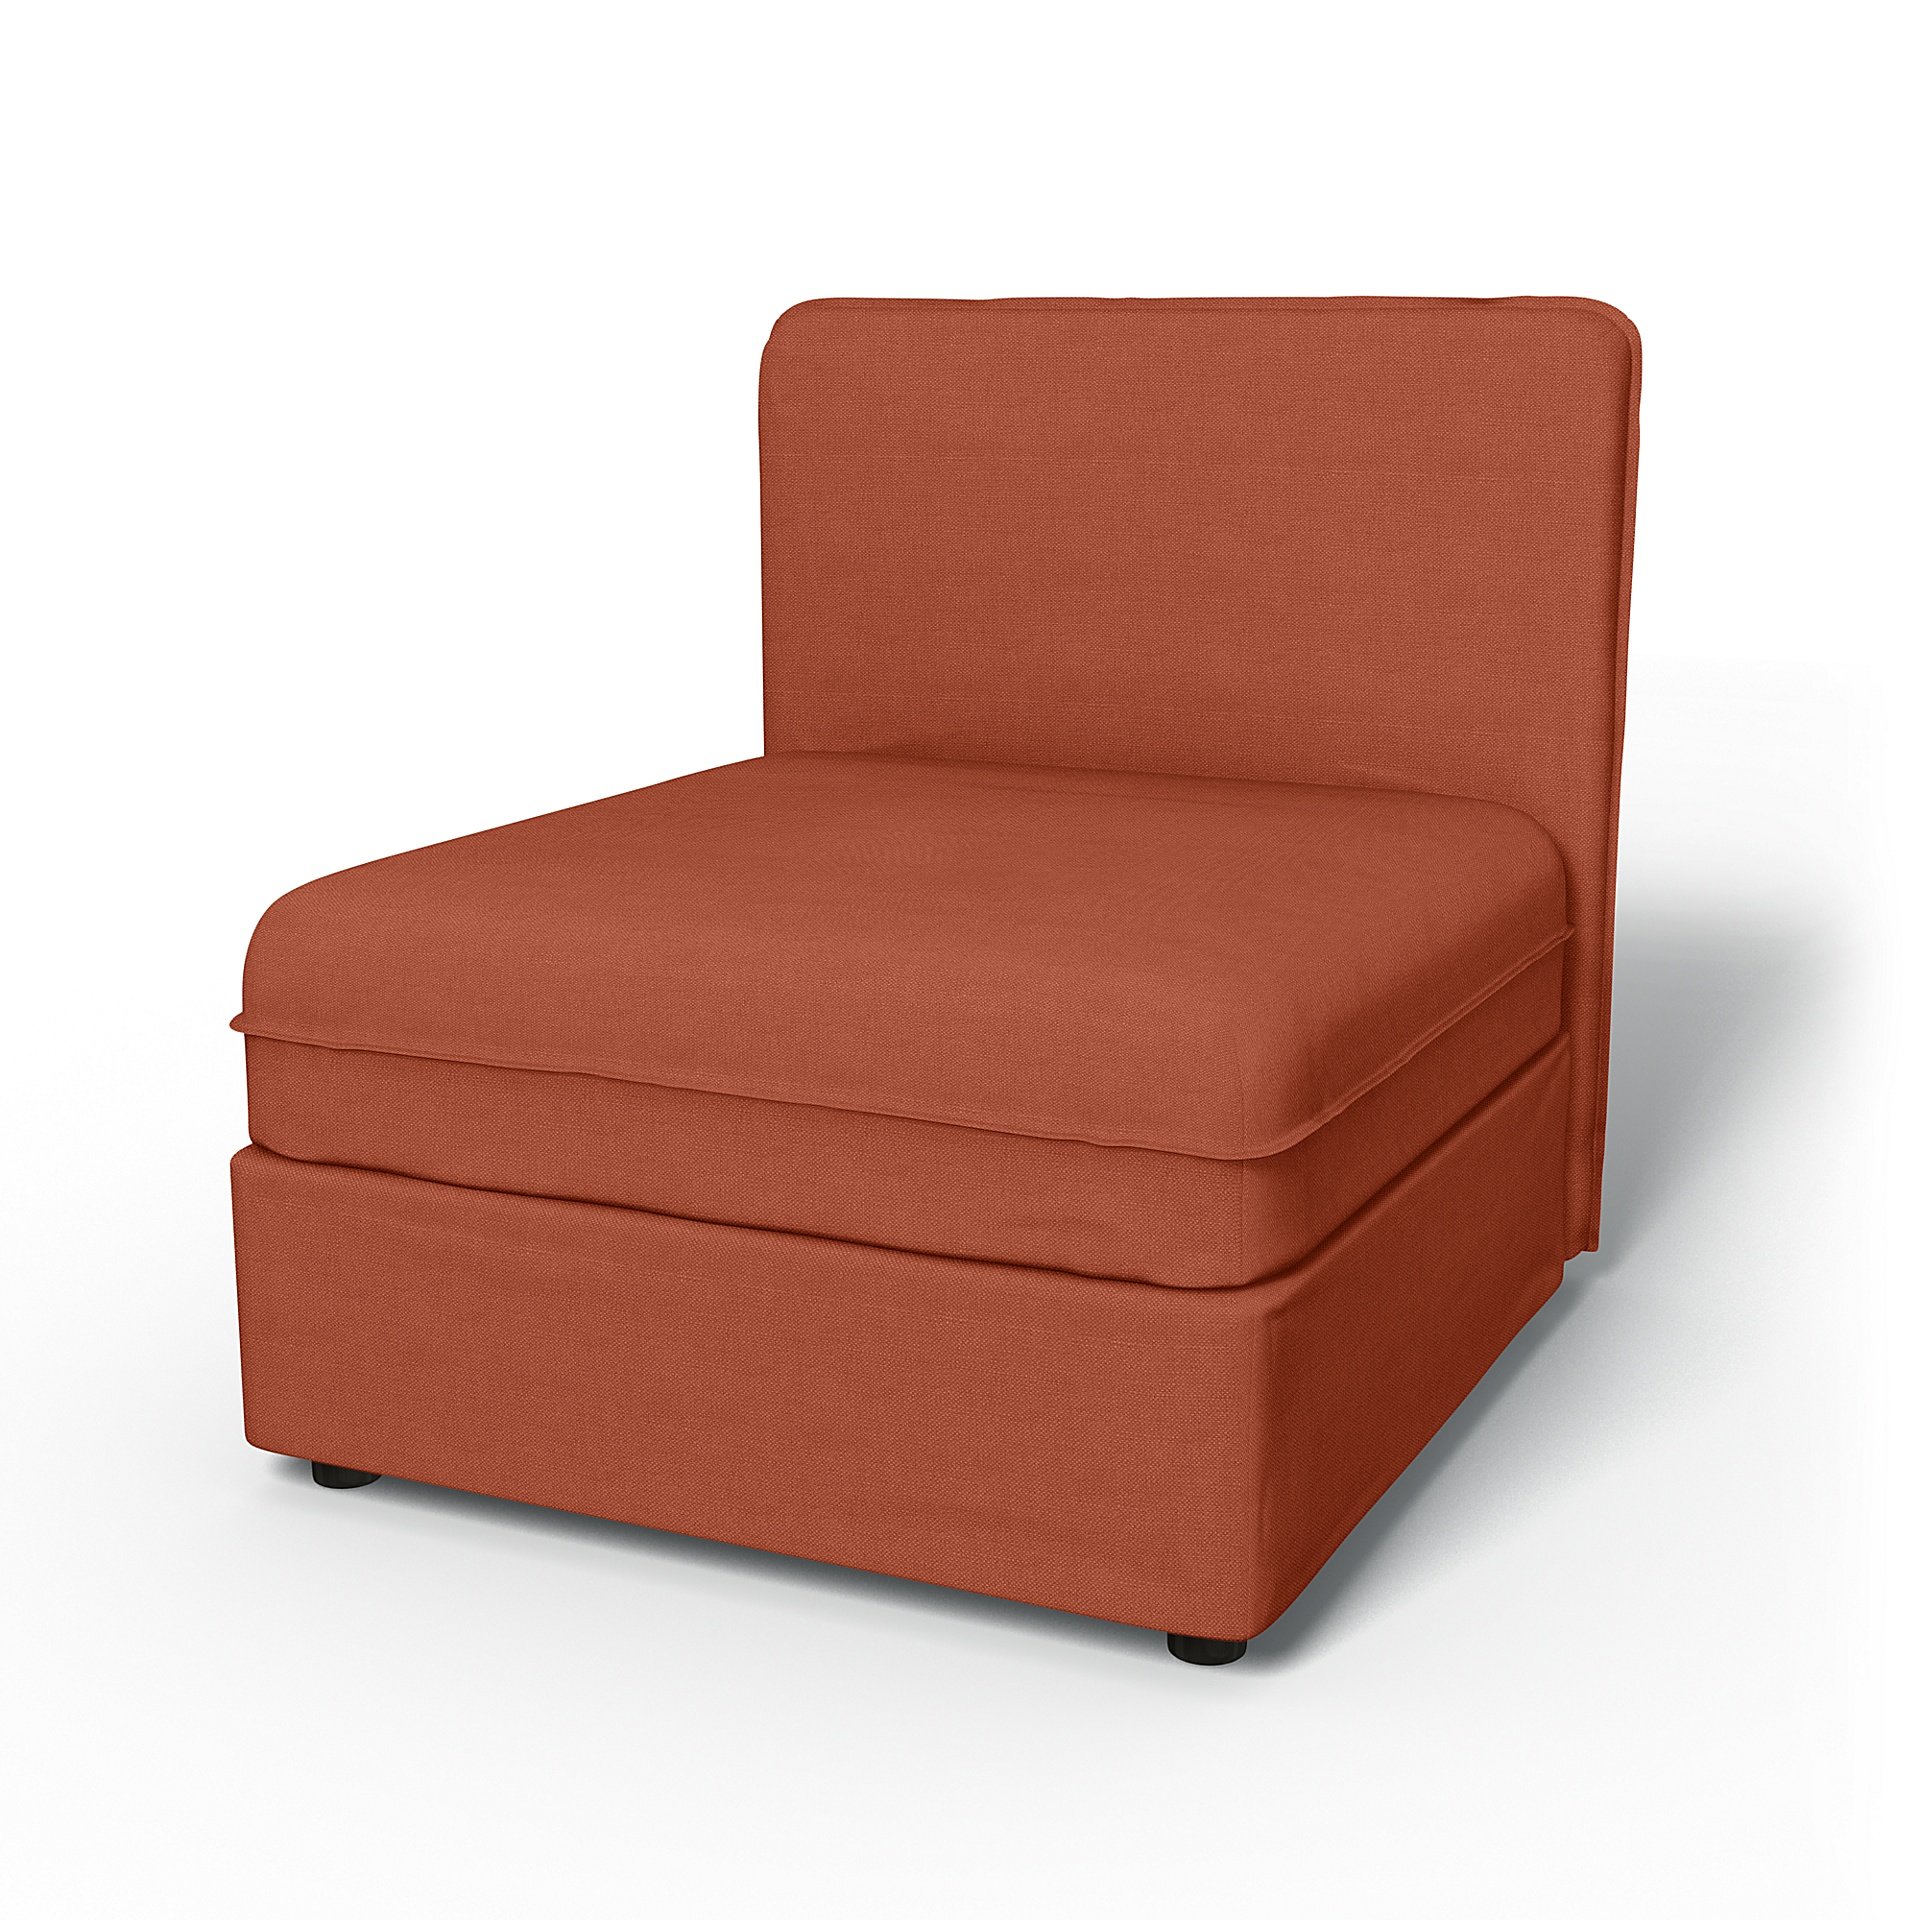 IKEA - Vallentuna Seat Module with Low Back Cover 80x80cm 32x32in, Burnt Orange, Linen - Bemz